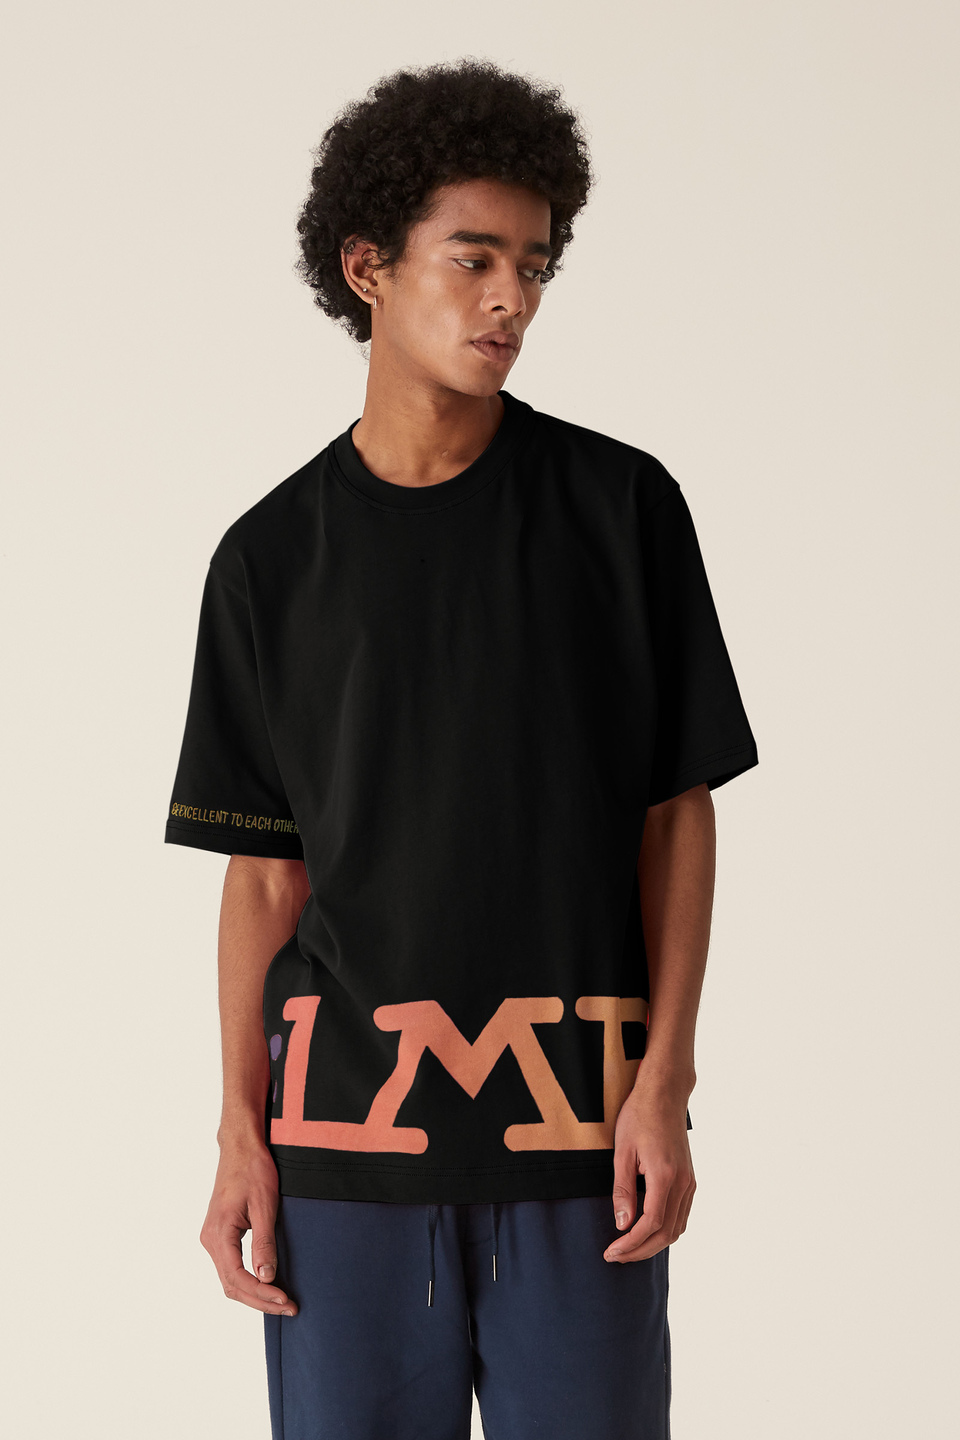 LMRTN-T-Shirt | La Martina - Official Online Shop